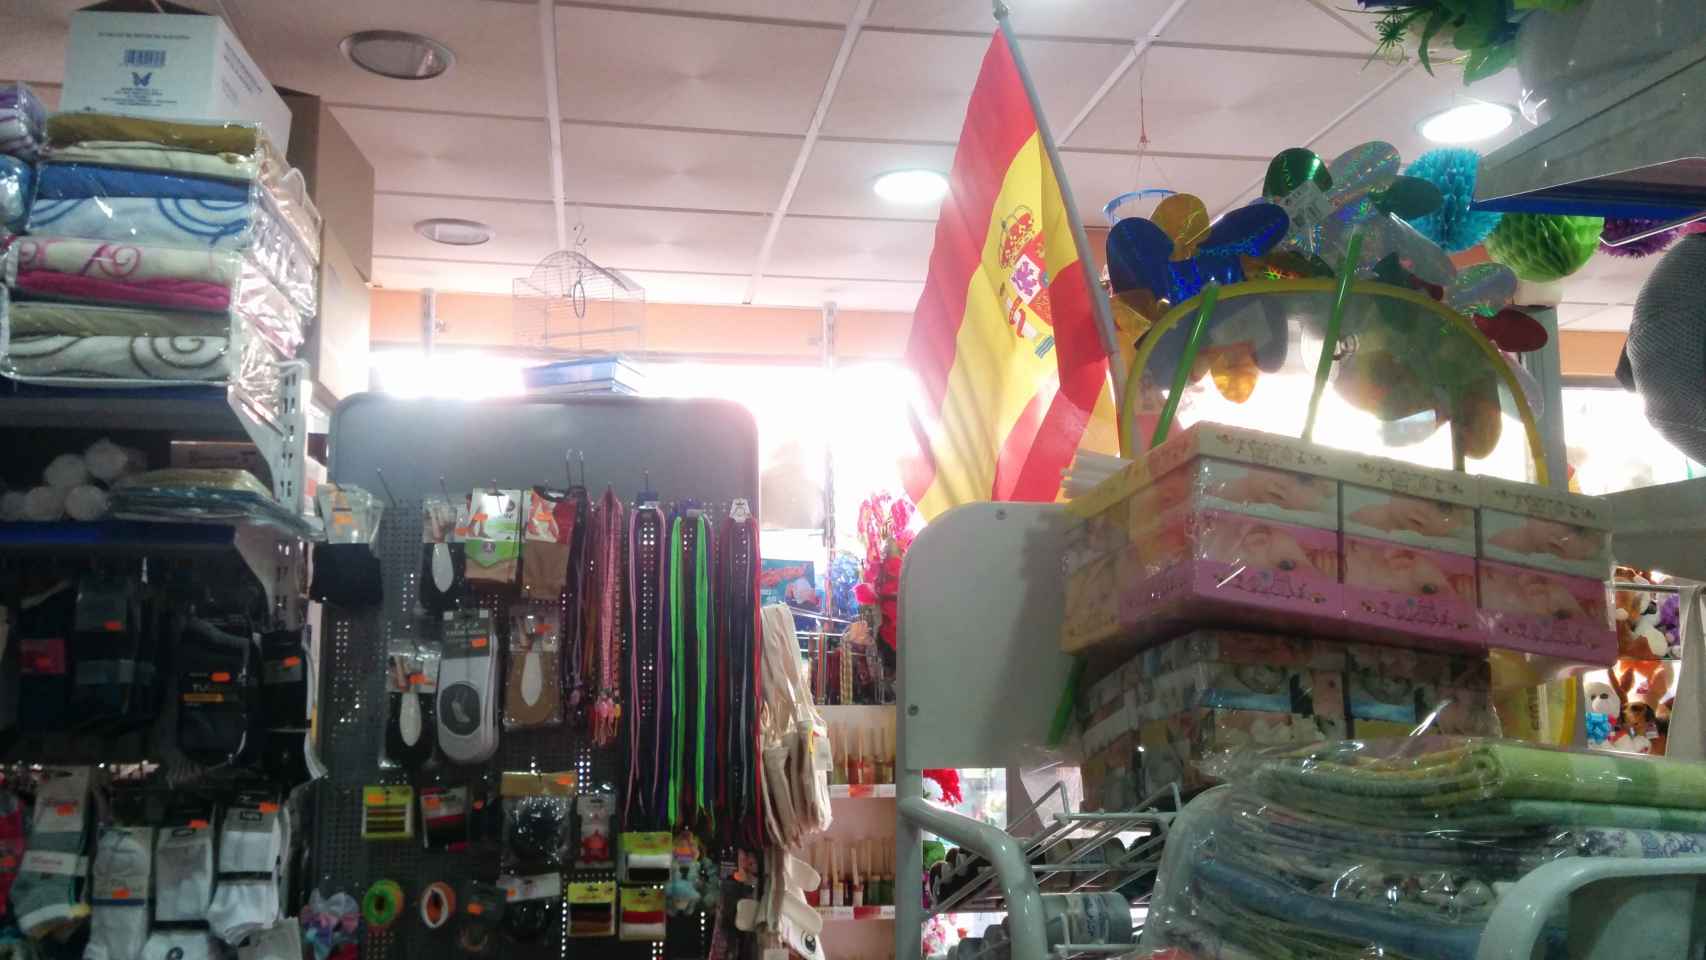 Las banderas de España, el producto más cotizado de los bazares chinos este mes por encima del material escolar